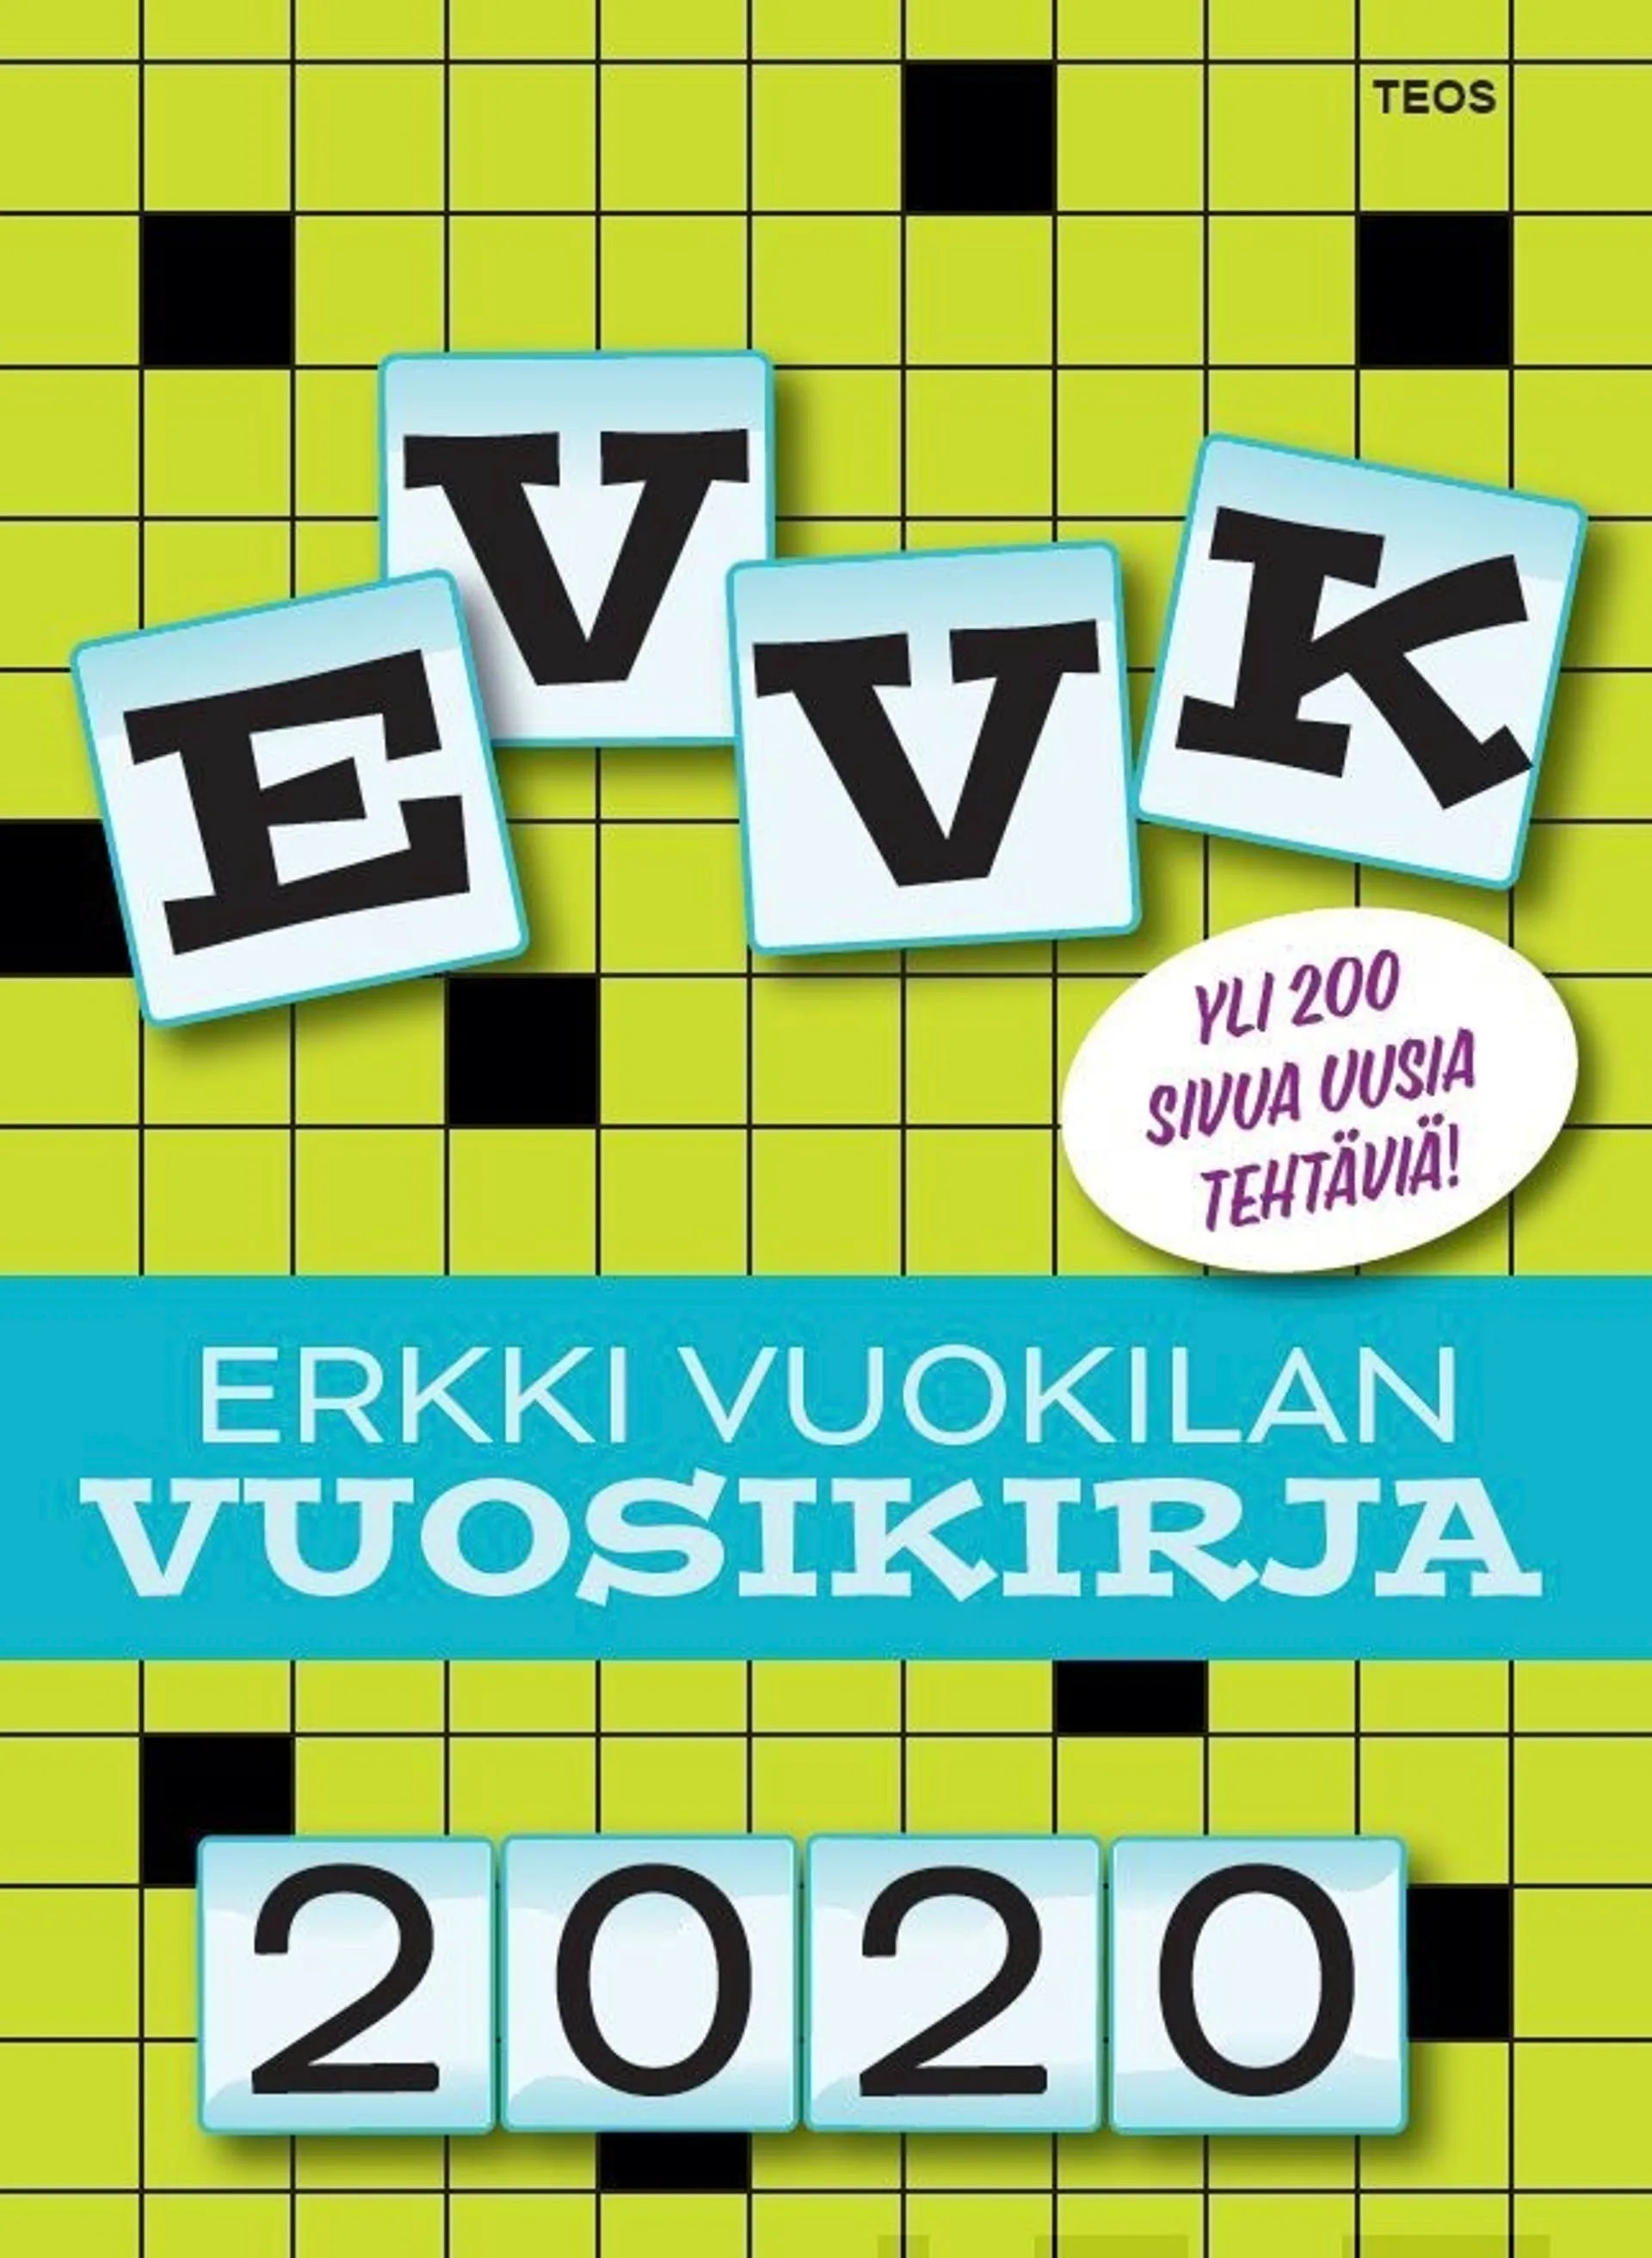 Vuokila, EVVK - Erkki Vuokilan Vuosikirja 2020